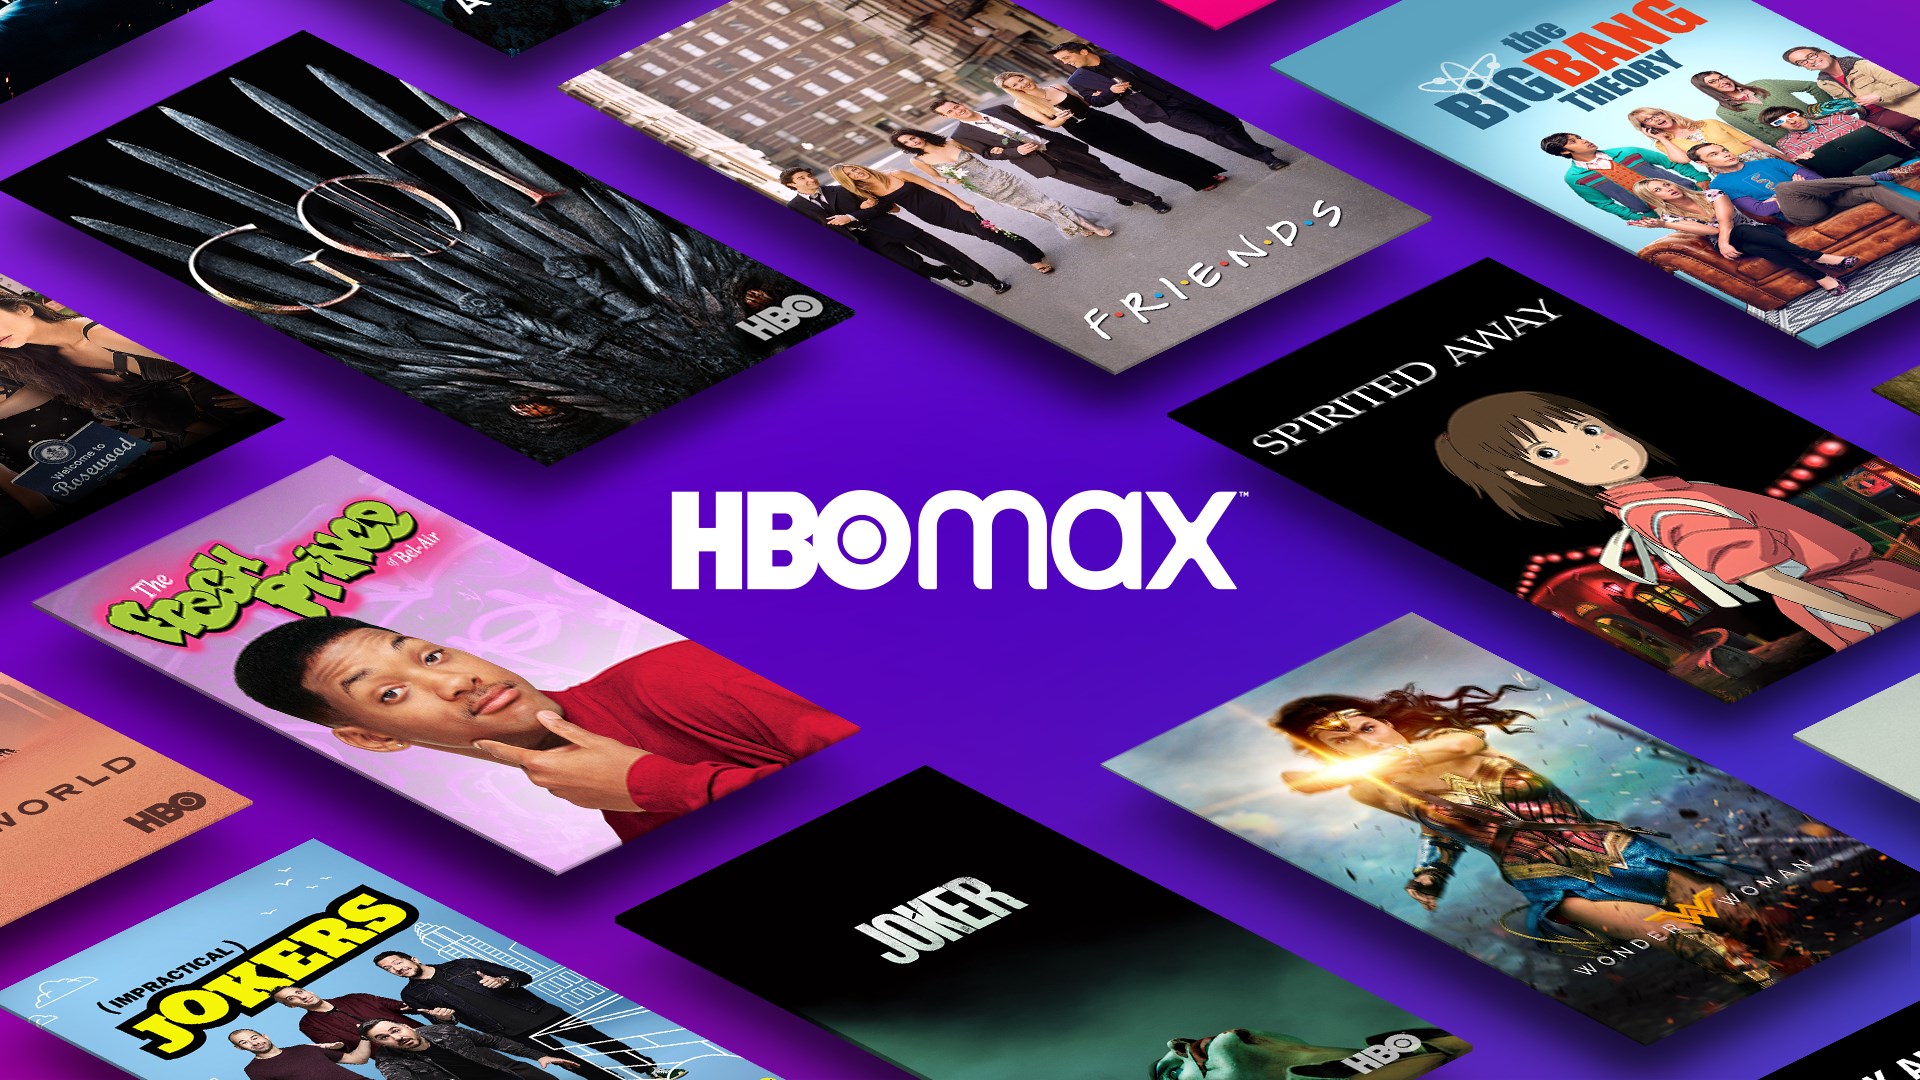 Mundo: De surpresa, HBO Max aumenta preços em vários países